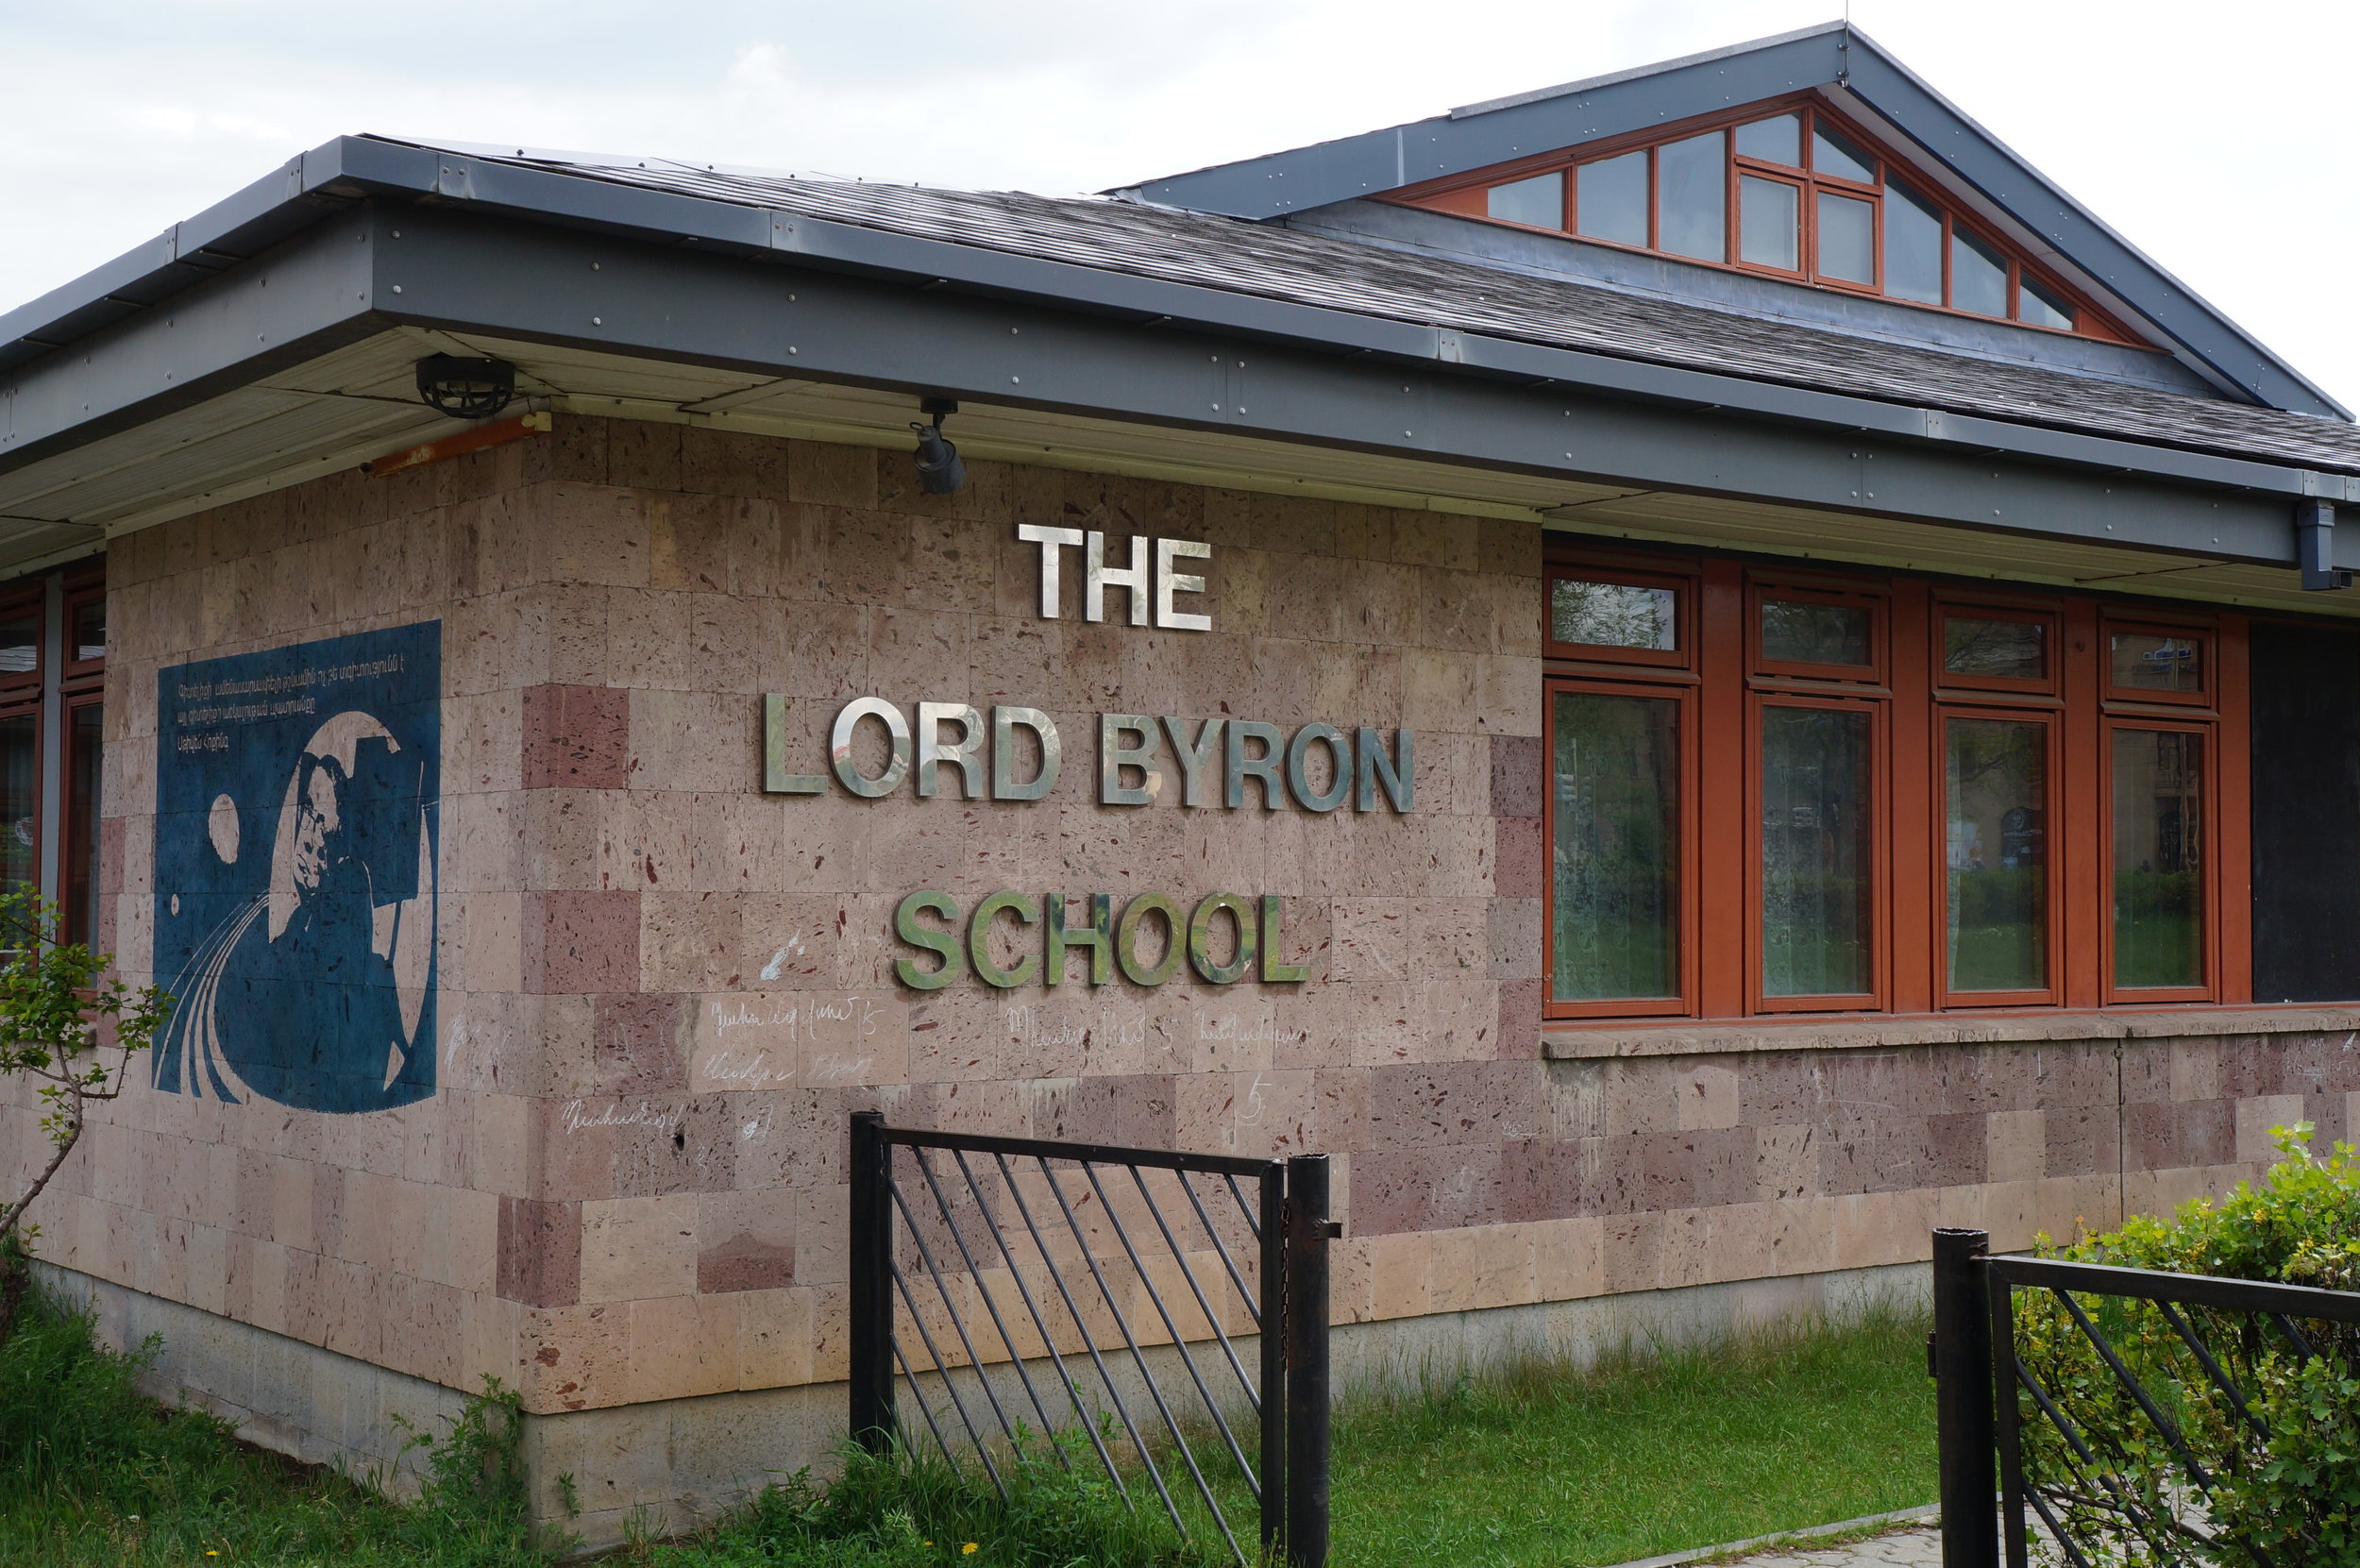 Լորդ Բայրոնի դպրոցը հիմնադրվել է երկրաշարժից հետո Բրիտանիայի ֆինանսավորմամբ: Այն բացել է Մարգարեթ Տեթչերը՝ Գյումրի կատարած իր այցի ժամանակ: